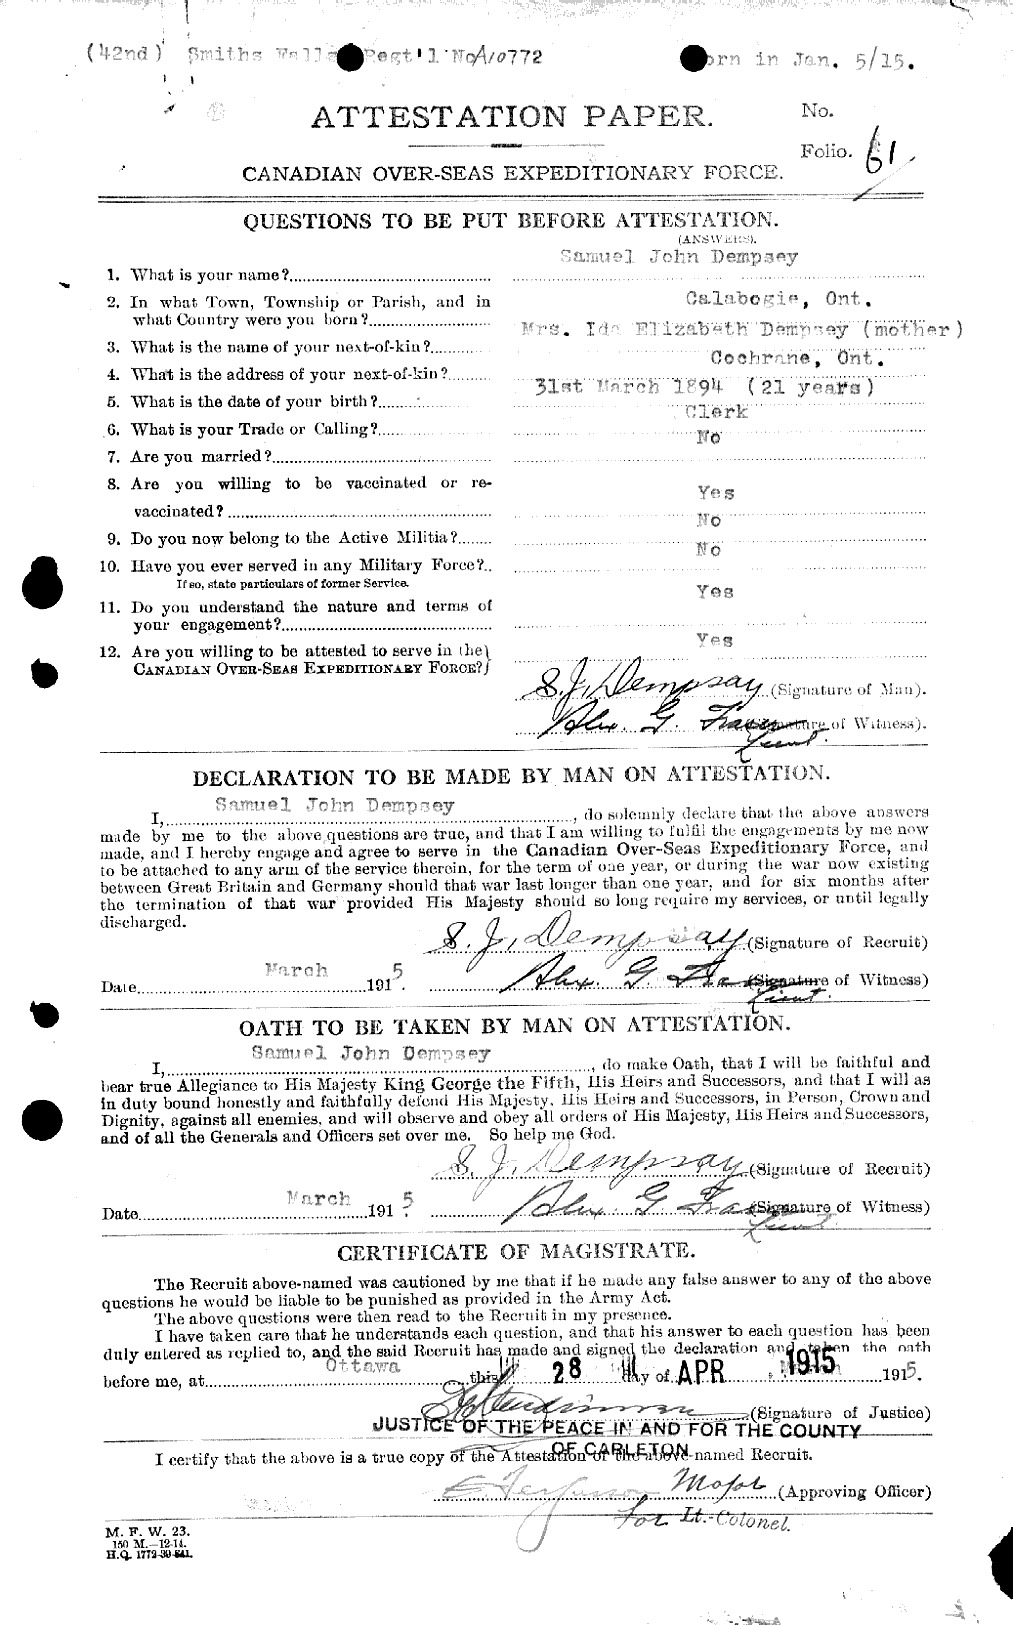 Dossiers du Personnel de la Première Guerre mondiale - CEC 051286a